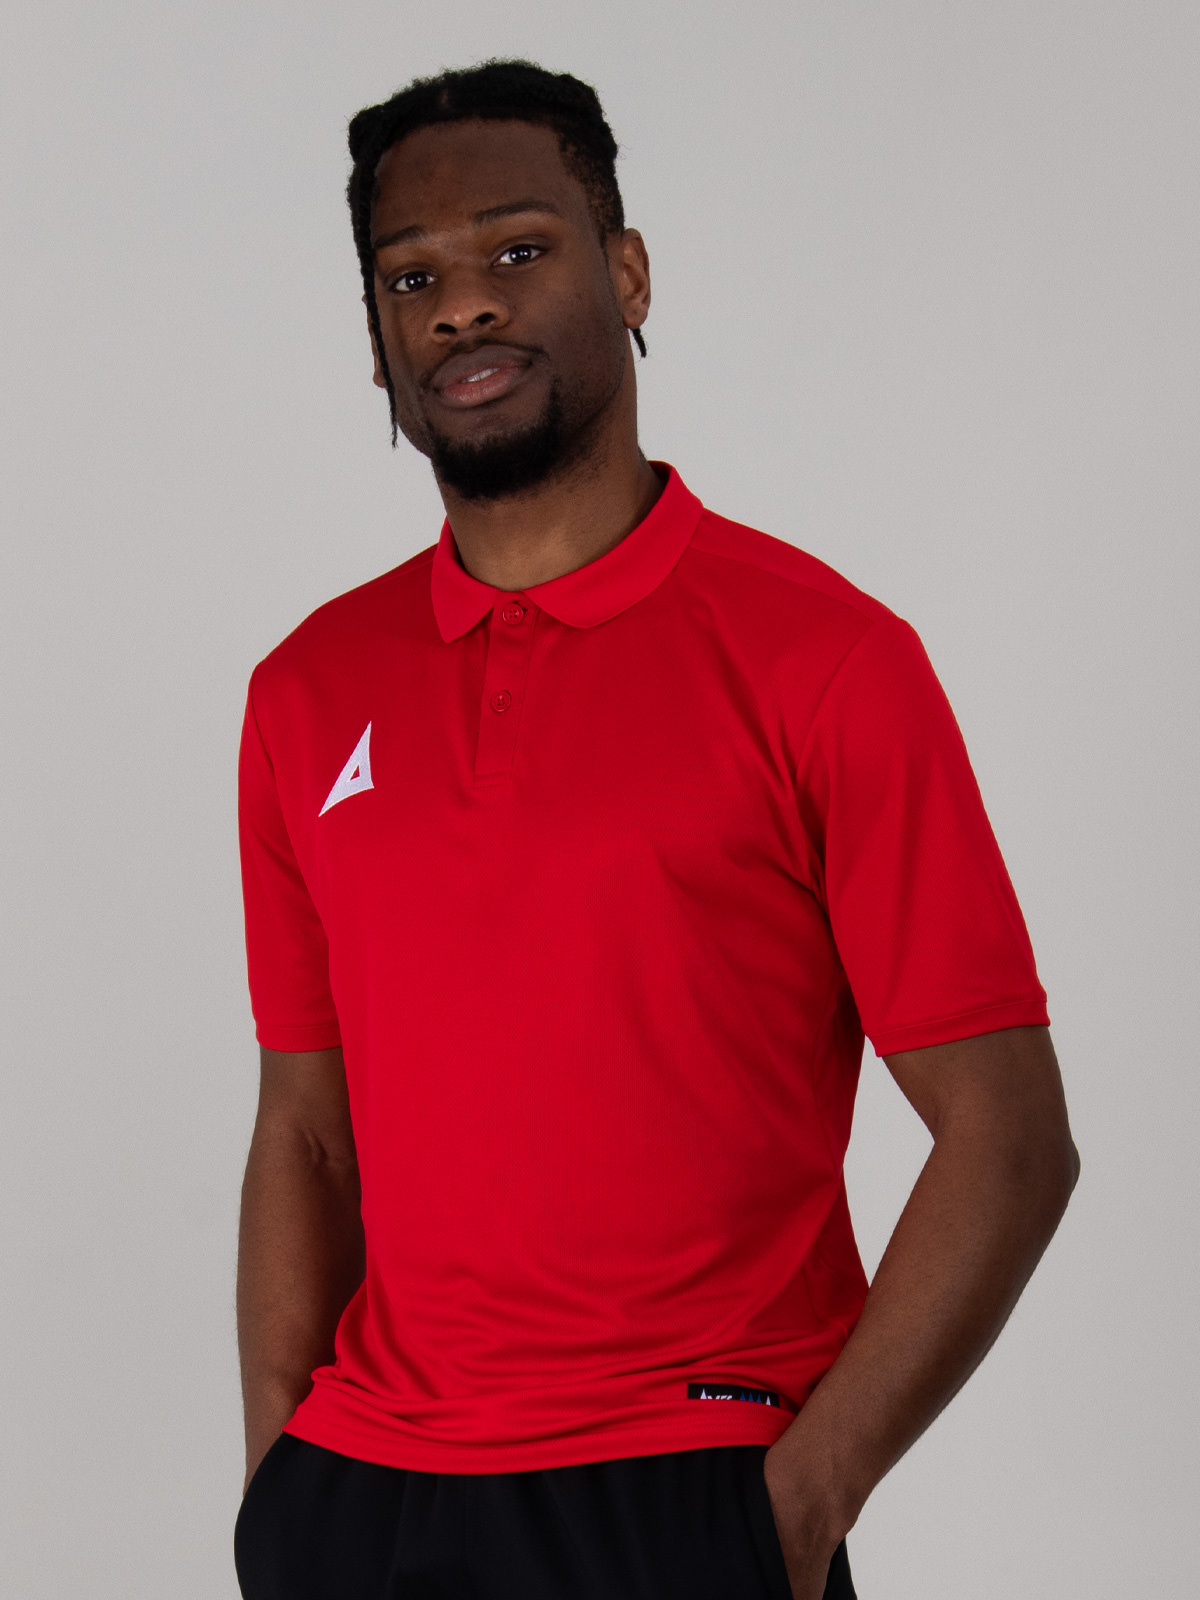 a plain red polo shirt